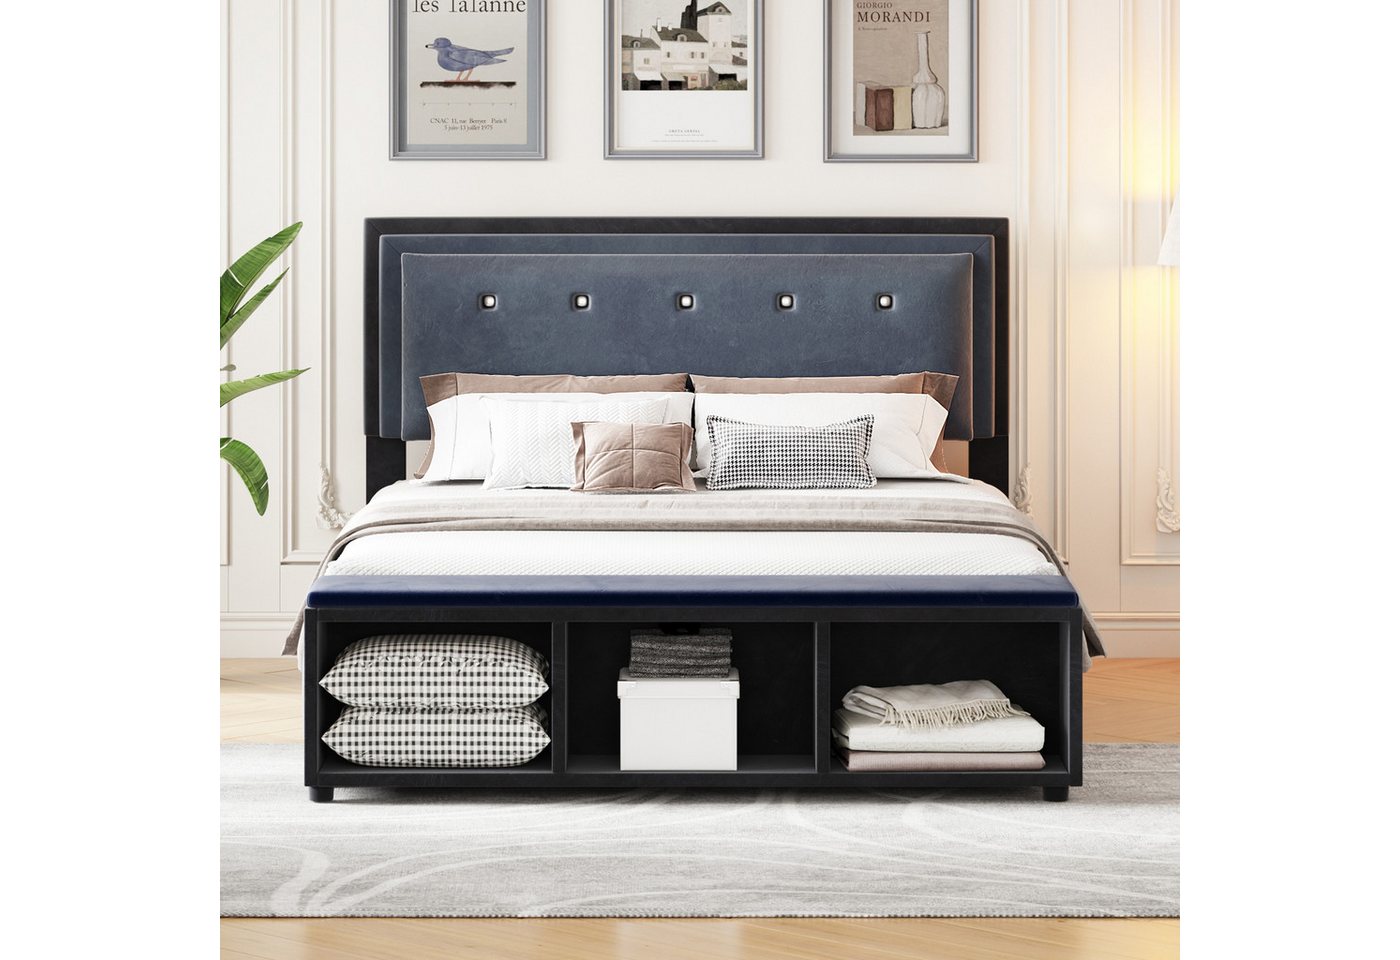 IDEASY Polsterbett Doppelbett, 140 x 200 cm, höhenverstellbares Kopfteil, (Fußstütze mit herausnehmbarer Aufbewahrung, grau), Samtstoff, Fußstütze am Ende des Bettes, Paillettenverzierung von IDEASY